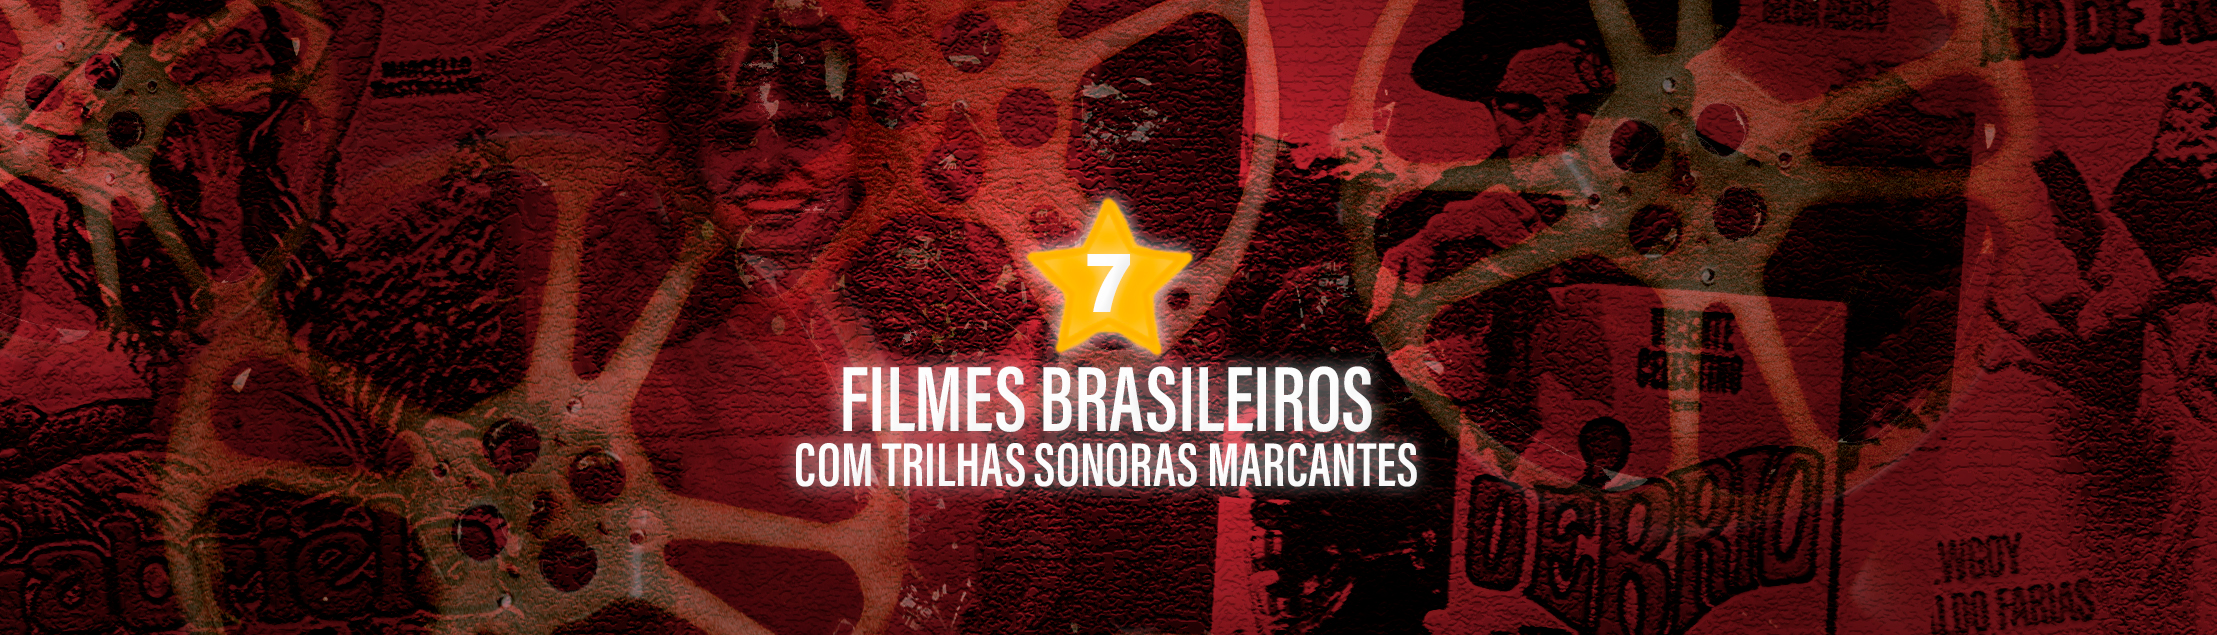 7 filmes brasileiros com trilhas sonoras marcantes